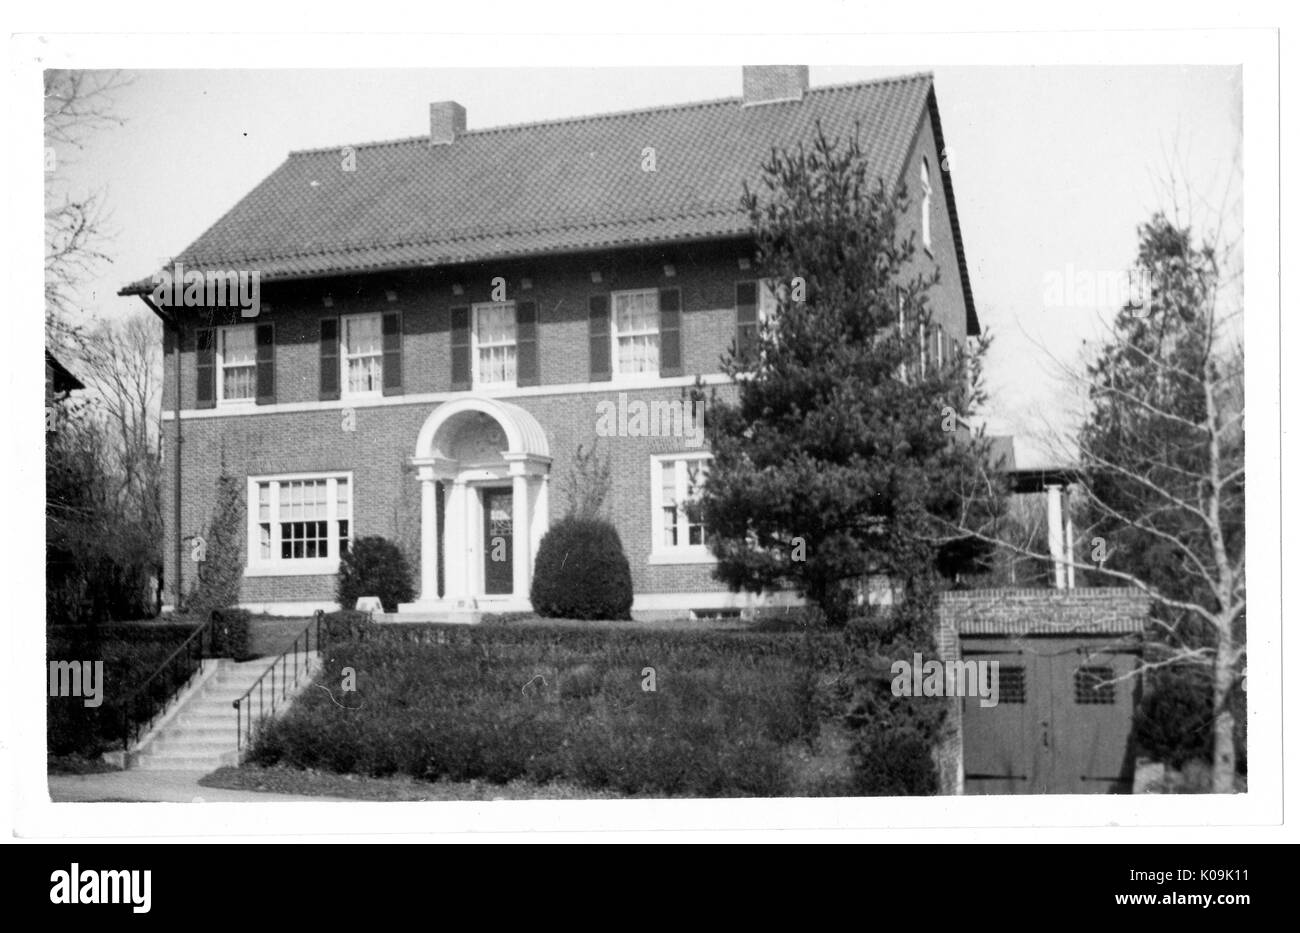 Vue d'angle avant d'une maison en brique près de Guilford, la maison est à deux étages et dispose d'un garage individuel au sous-sol de la maison, Baltimore, Maryland, 1910. Cette image est tirée d'une série sur la construction et la vente de maisons dans le quartier Roland Park/Guilford de Baltimore, a streetcar suburb et l'une des premières communautés planifiées aux États-Unis. Le quartier a été isolé, et est considéré comme l'un des premiers exemples de l'application de la ségrégation raciale par l'utilisation d'alliances. Banque D'Images